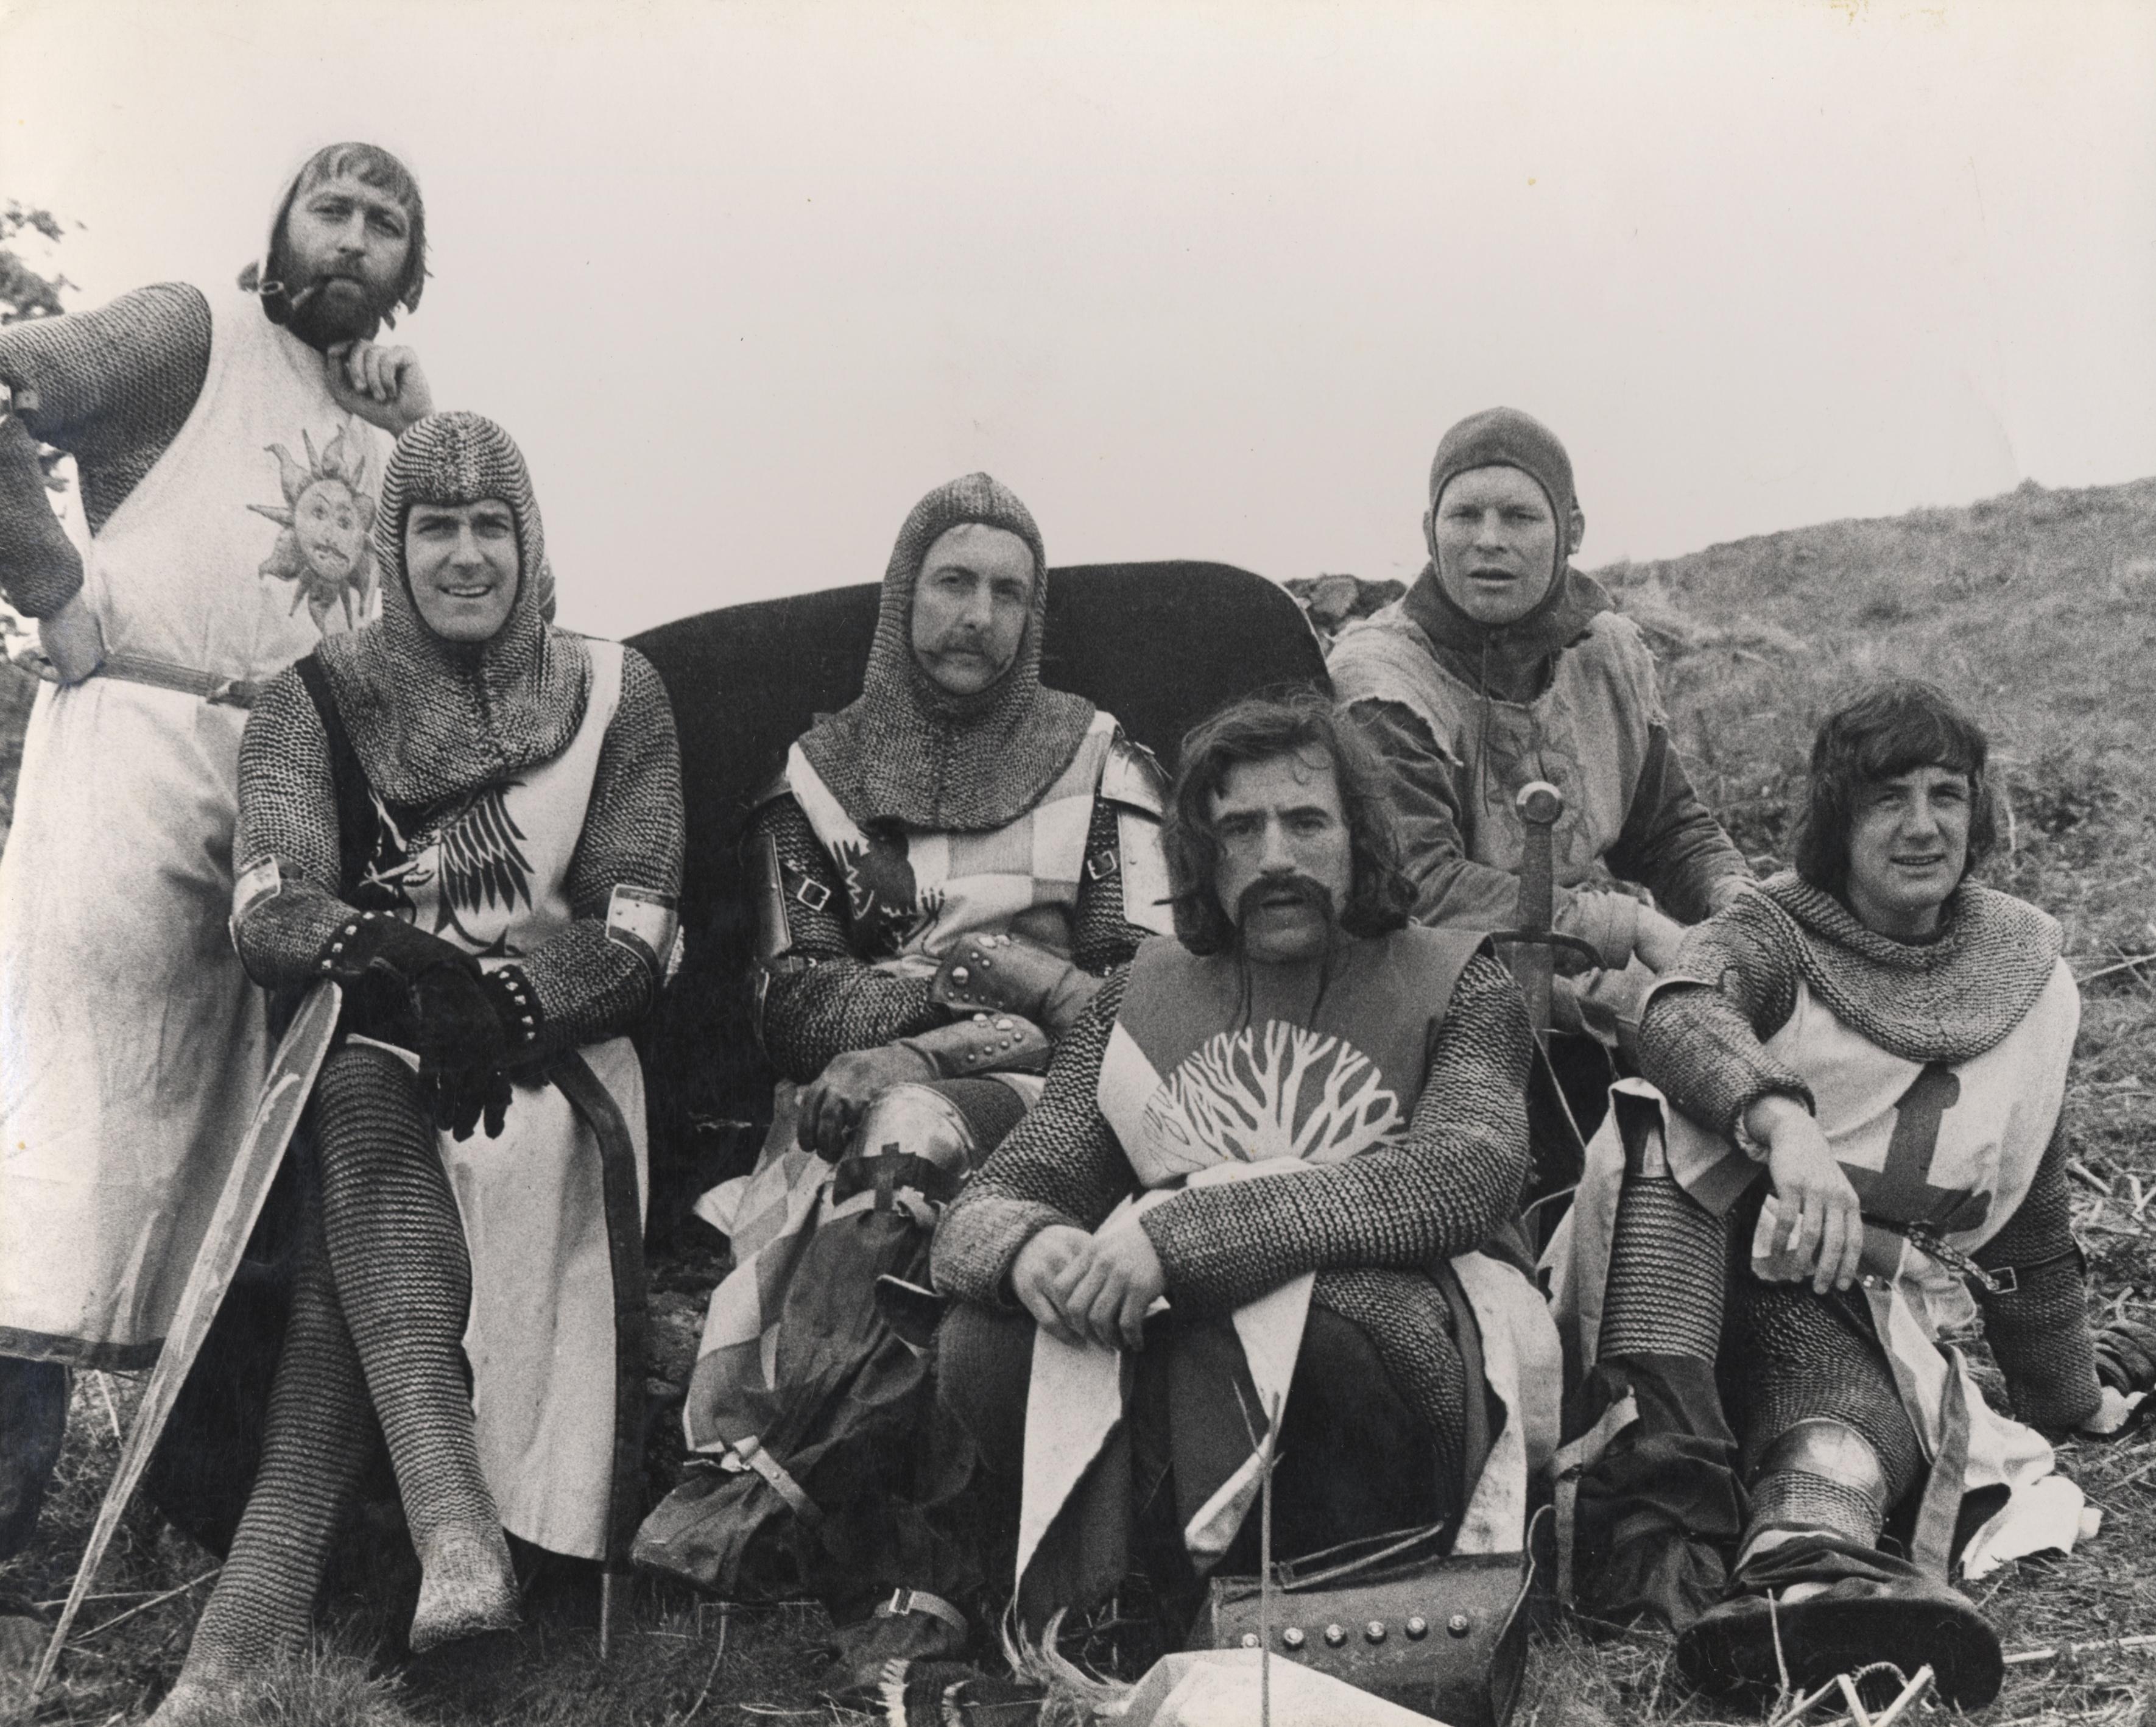 Monty Python cast photo